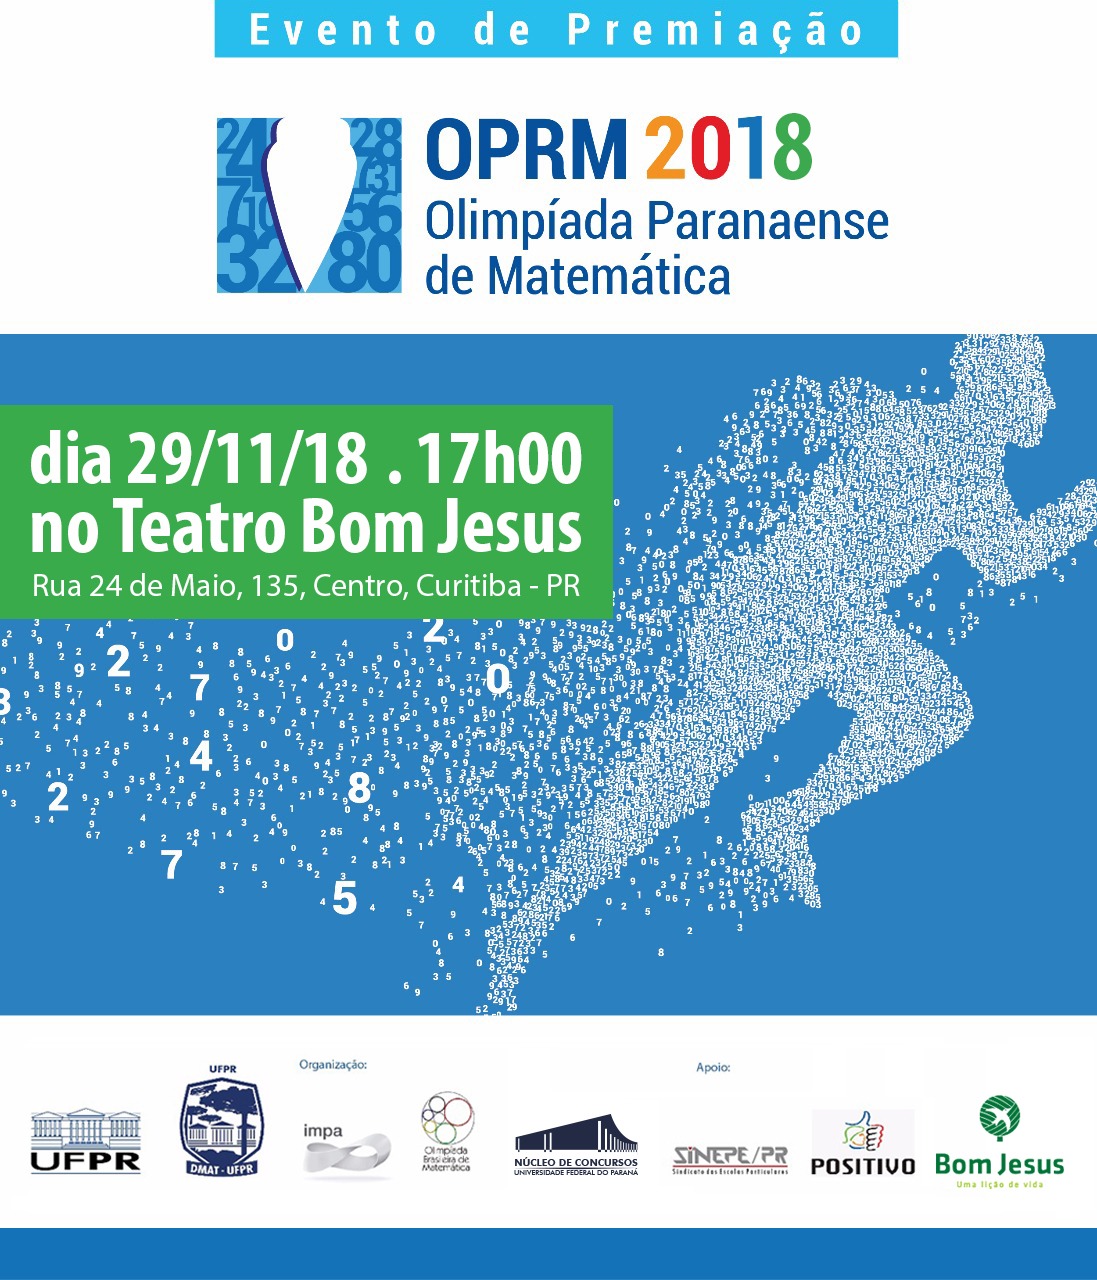 Evento de Premiação da Olimpíada Paranaense de Matemática 2018